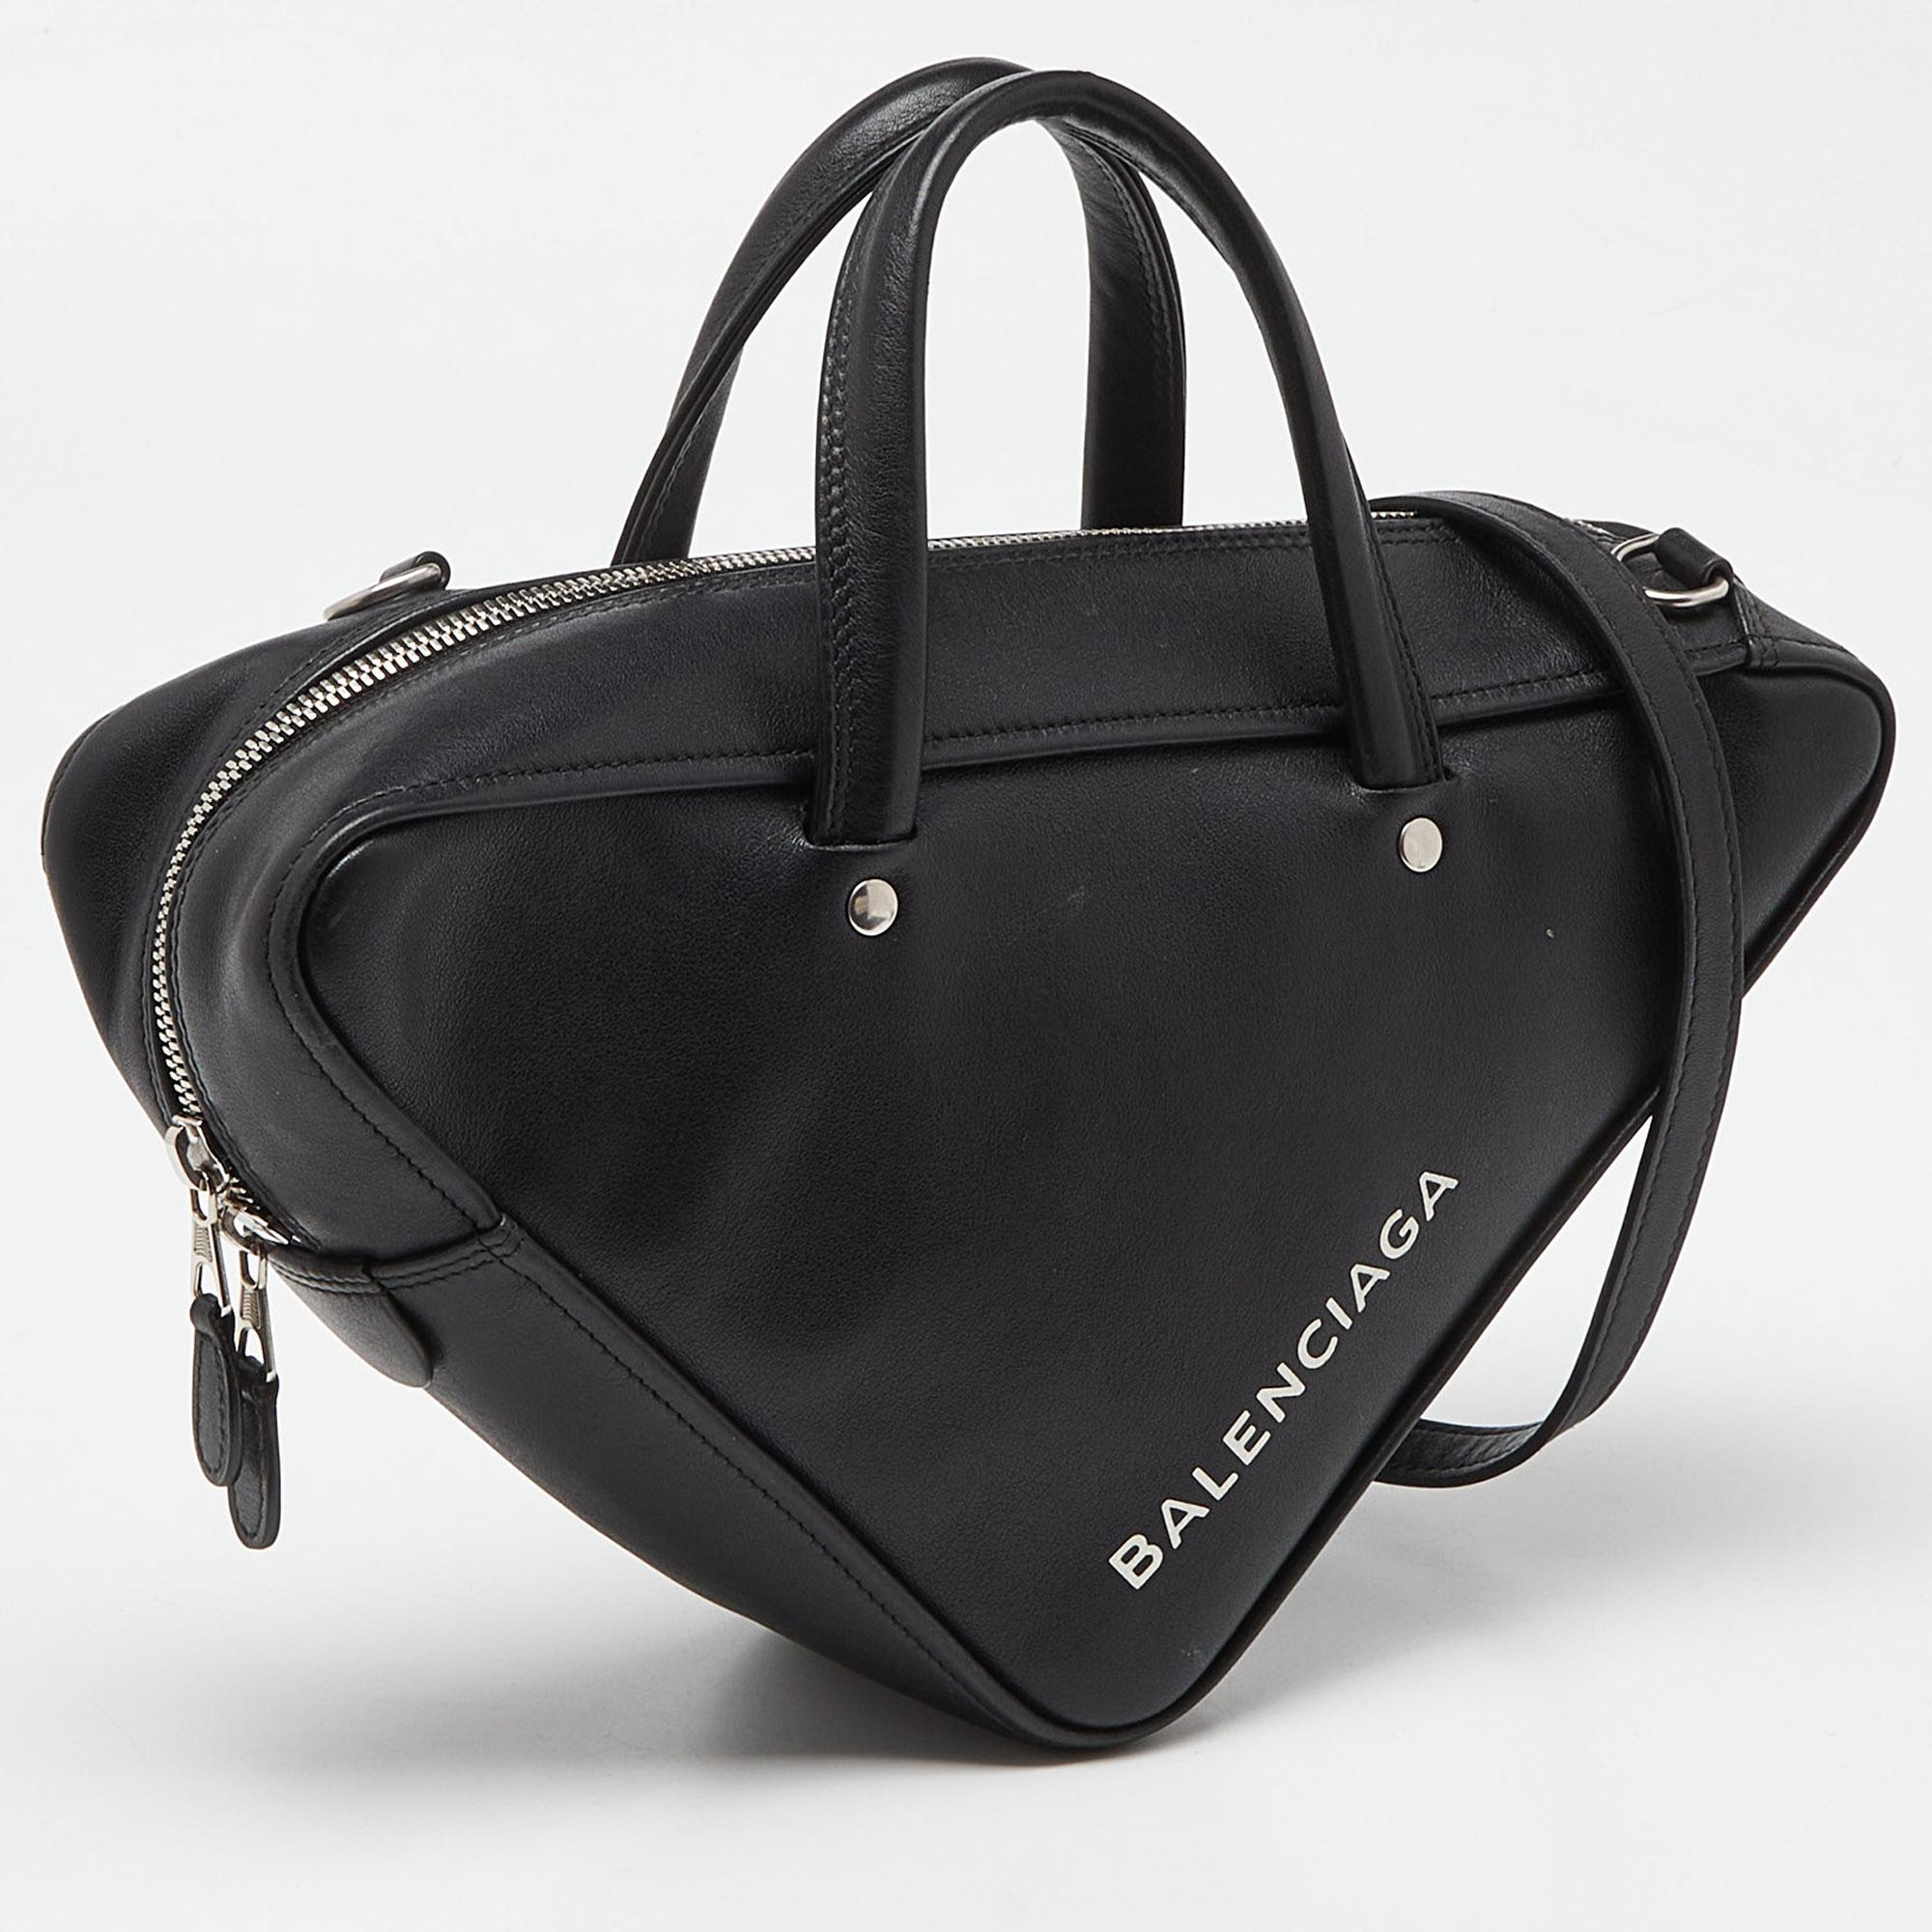 Balenciaga Black Leather Small Triangle Duffle Bag For Sale 6